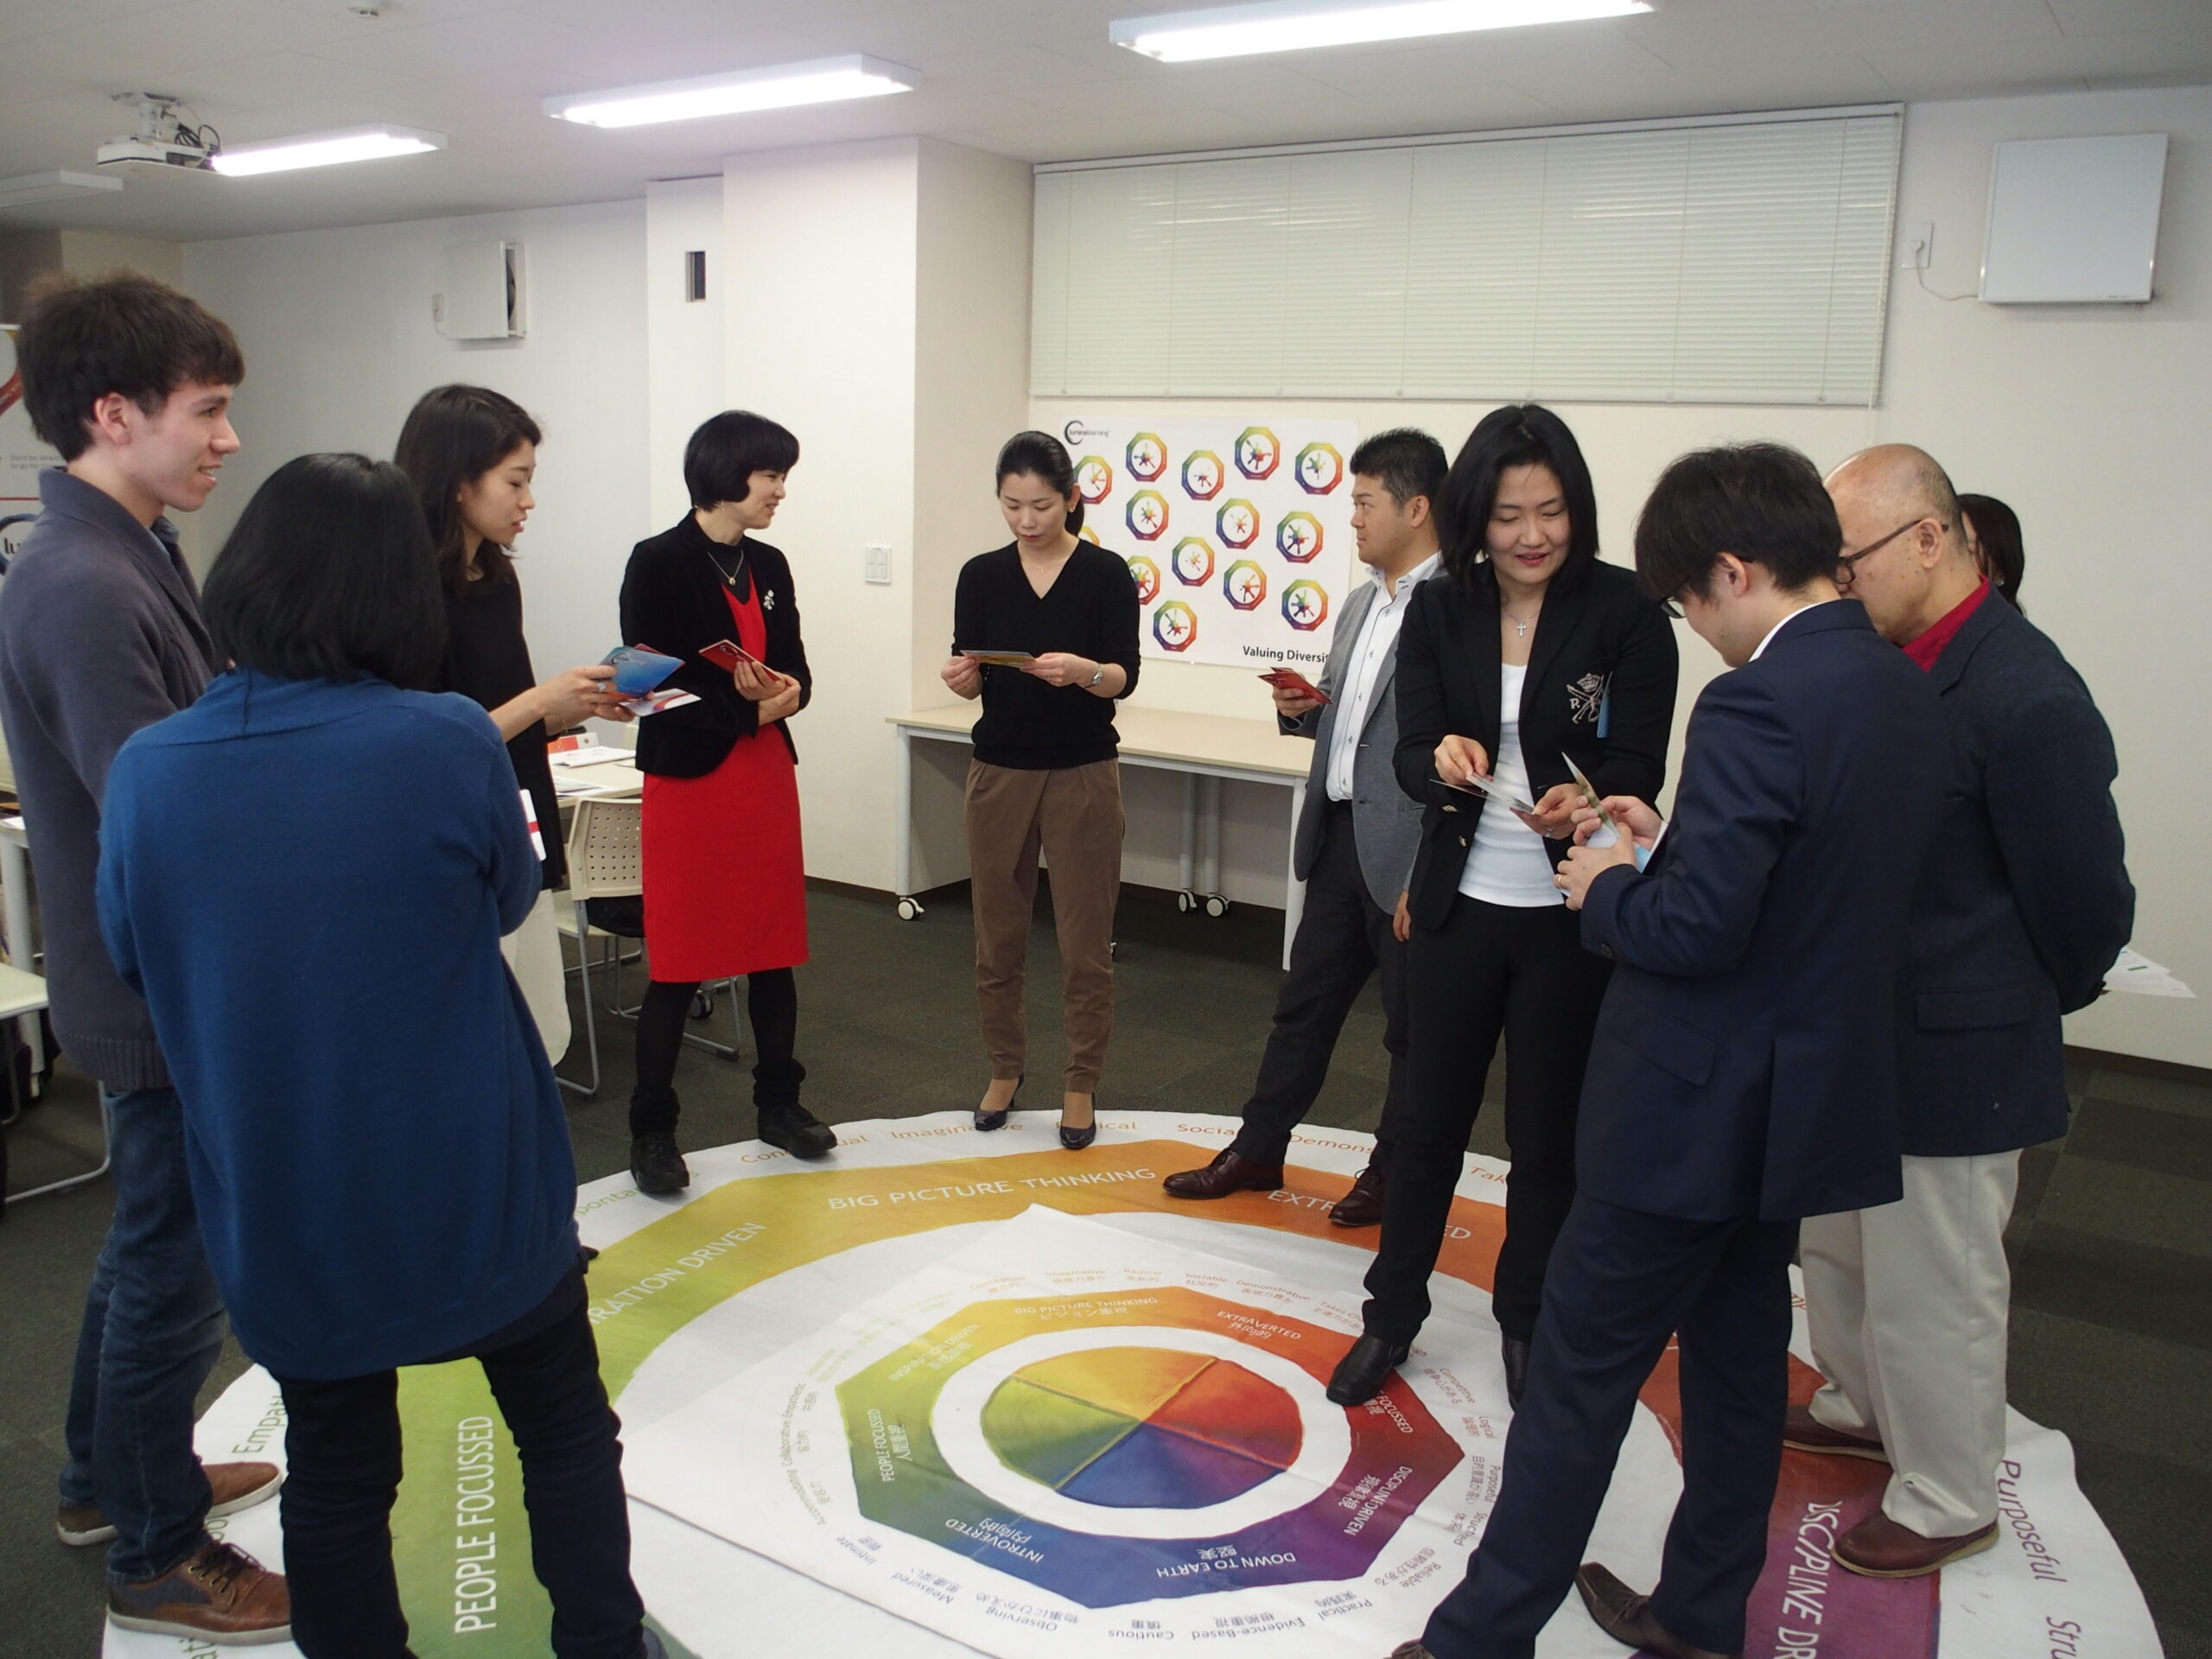 ルミナラーニングジャパンの研修で使用するマットの上でカードを使用したワークをする参加者の方々。